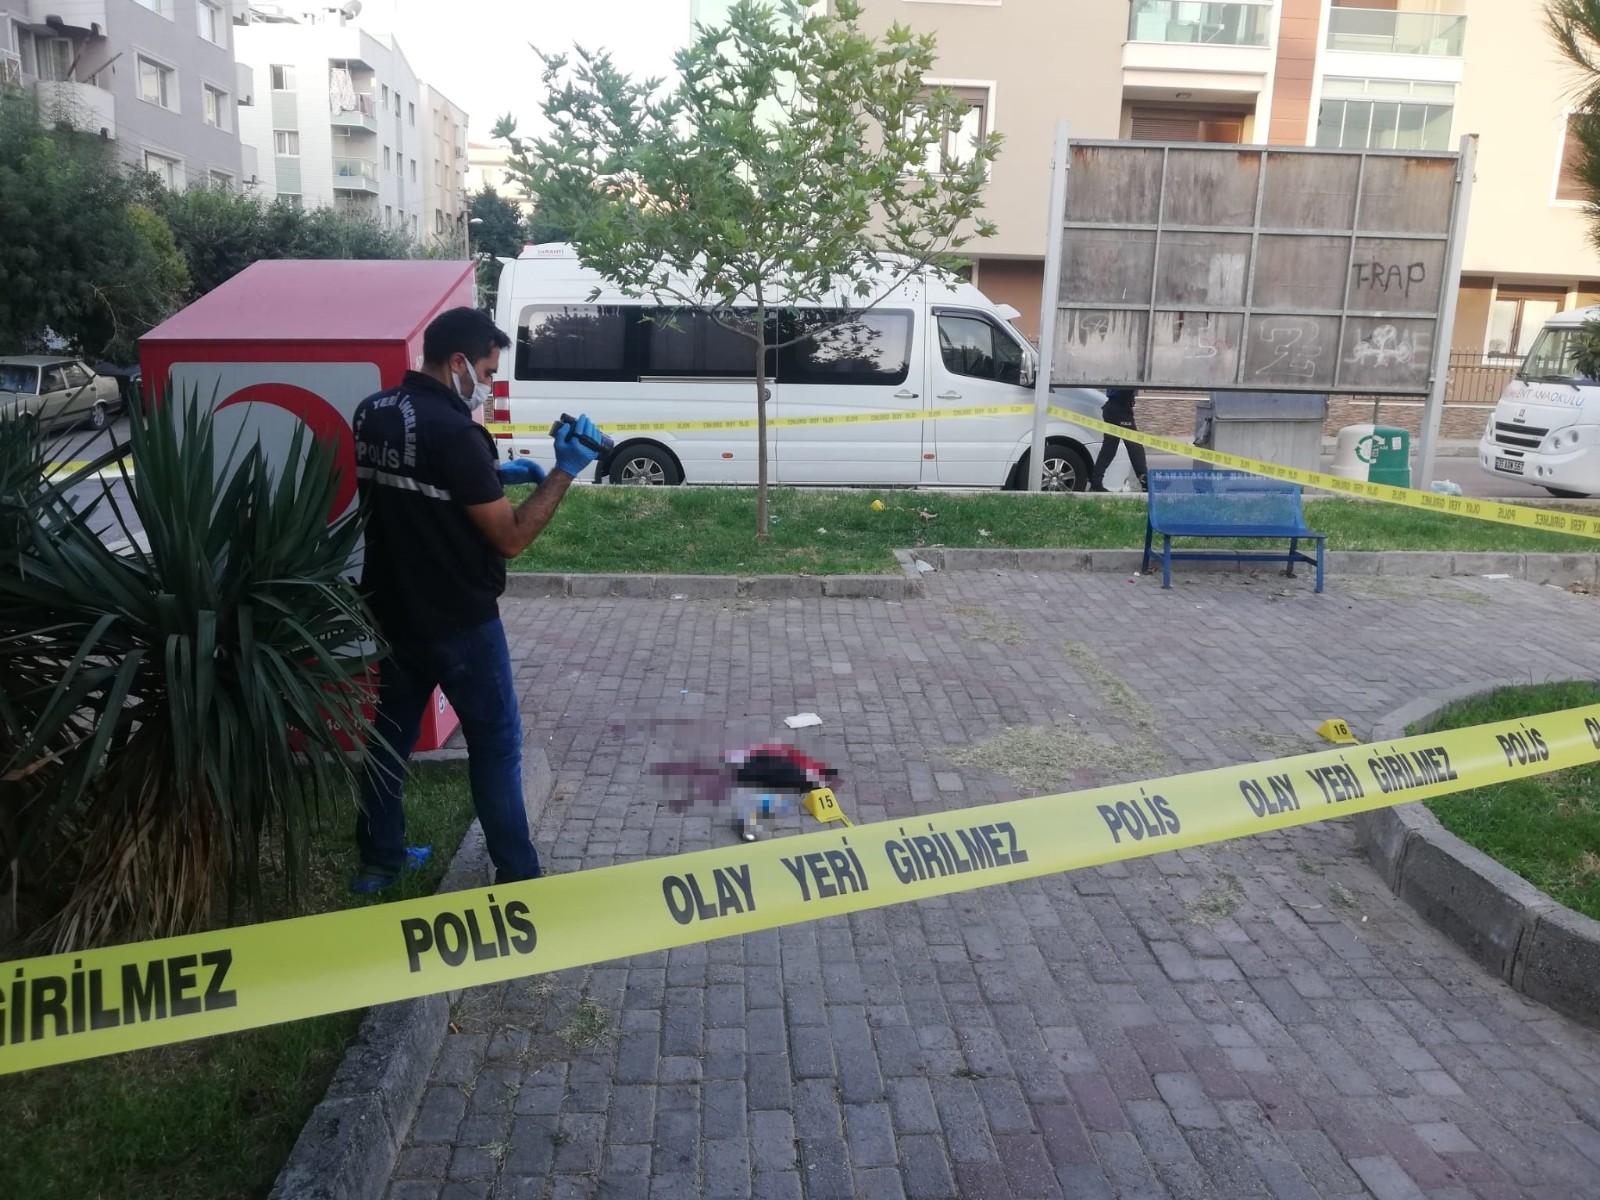 İzmir’de parkı kana buladılar: 1 ölü, 3 yaralı